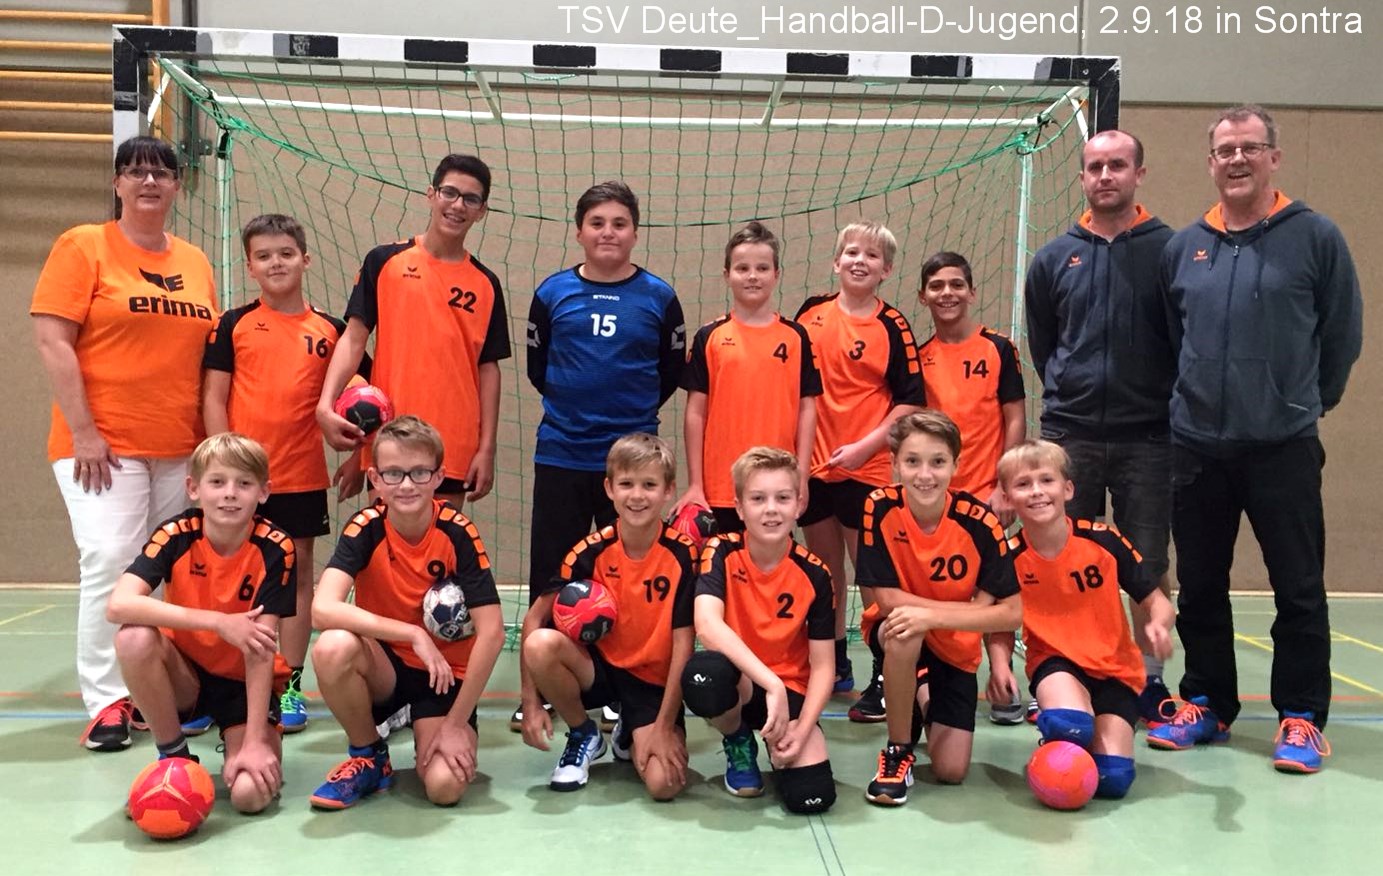 Web IMG 20180902 WA0027 TSV Deute Handball D Jugend in Sontra